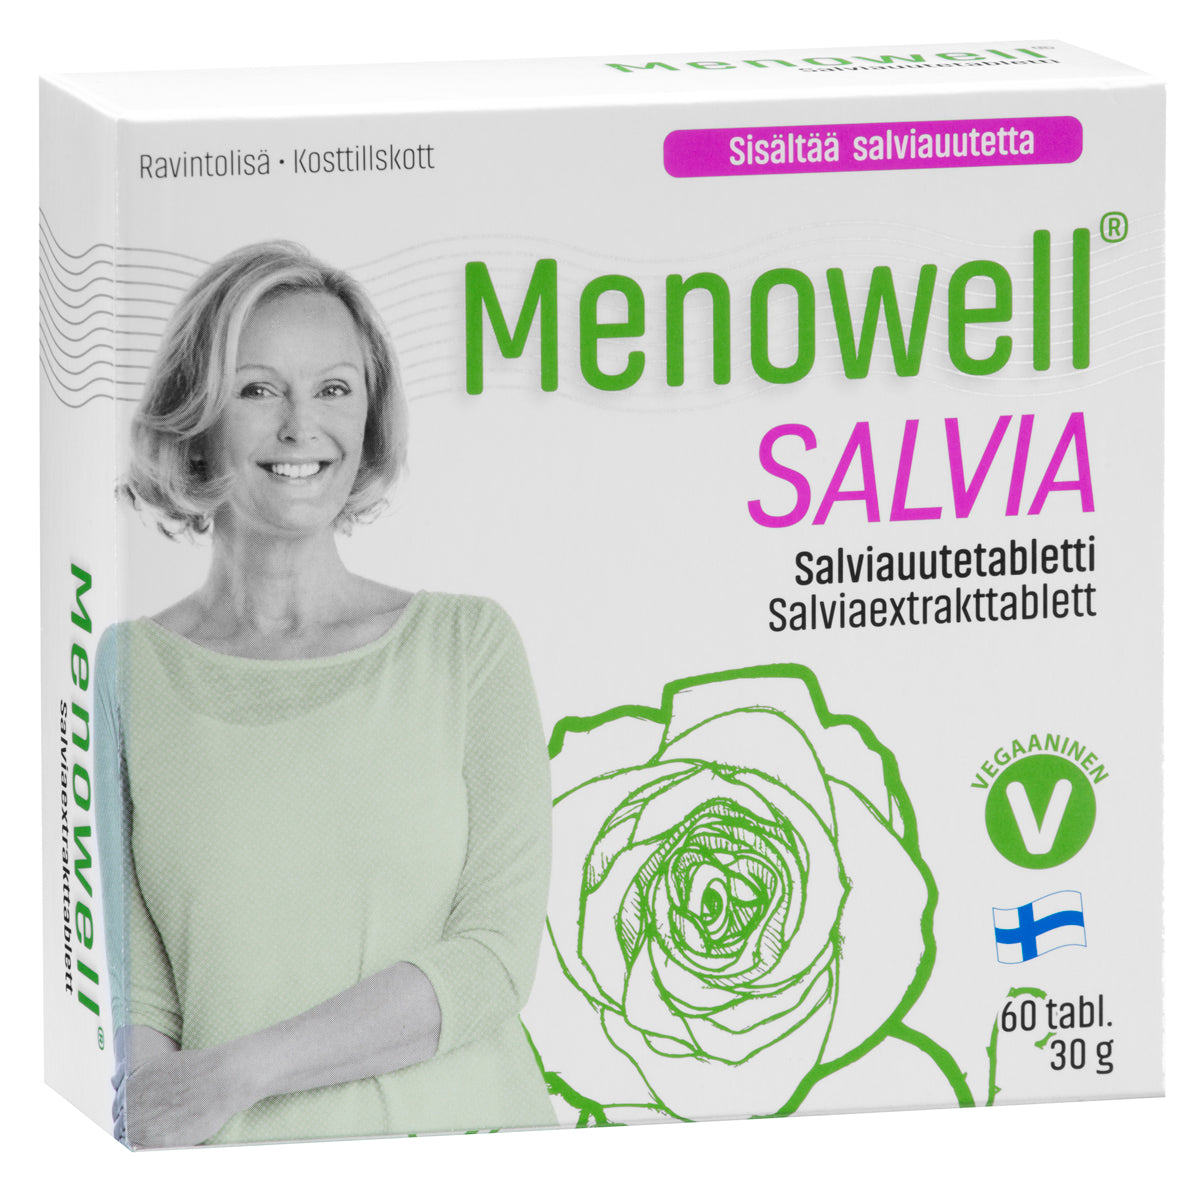 Menowell Salvia-Hankintatukku-Hyvinvoinnin Tavaratalo